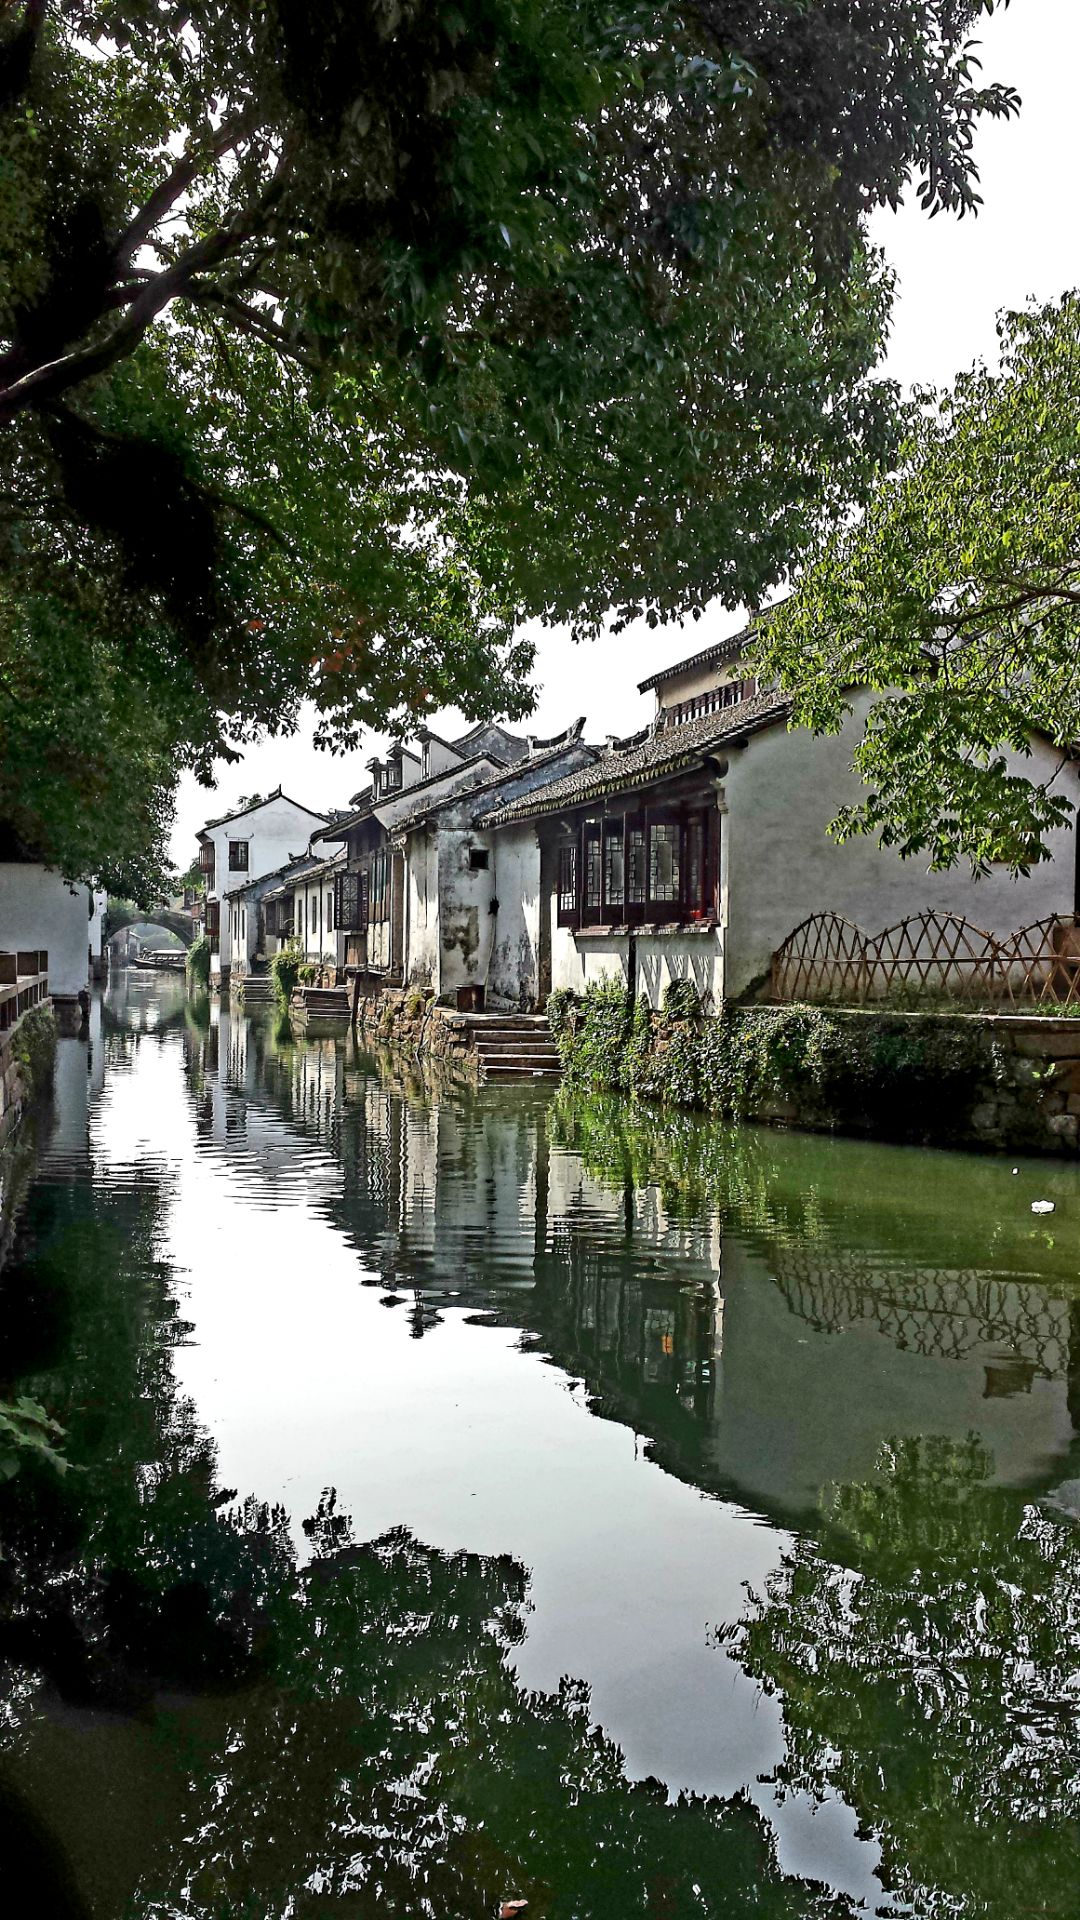 周庄--一座水墨丹青写就的江南小镇，因小平送美国总统的陈丹青画双桥而闻名于世。张厅和沈厅特别是沈万三